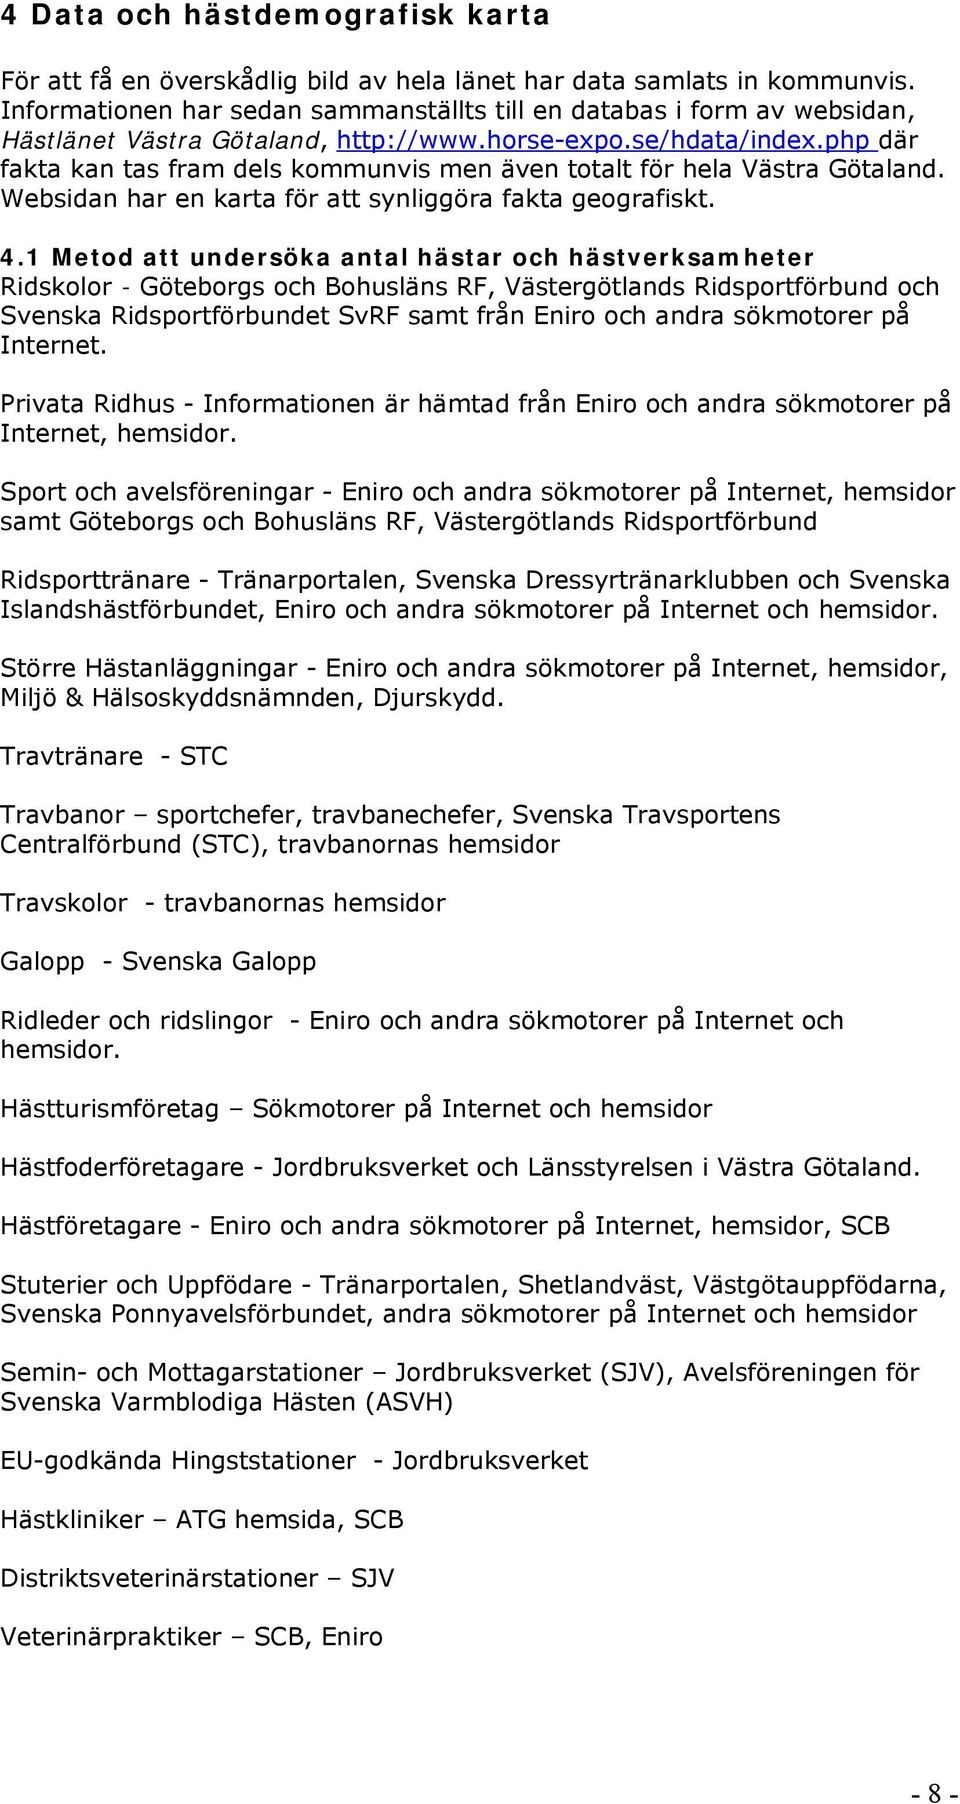 php där fakta kan tas fram dels kommunvis men även totalt för hela Västra Götaland. Websidan har en karta för att synliggöra fakta geografiskt. 4.